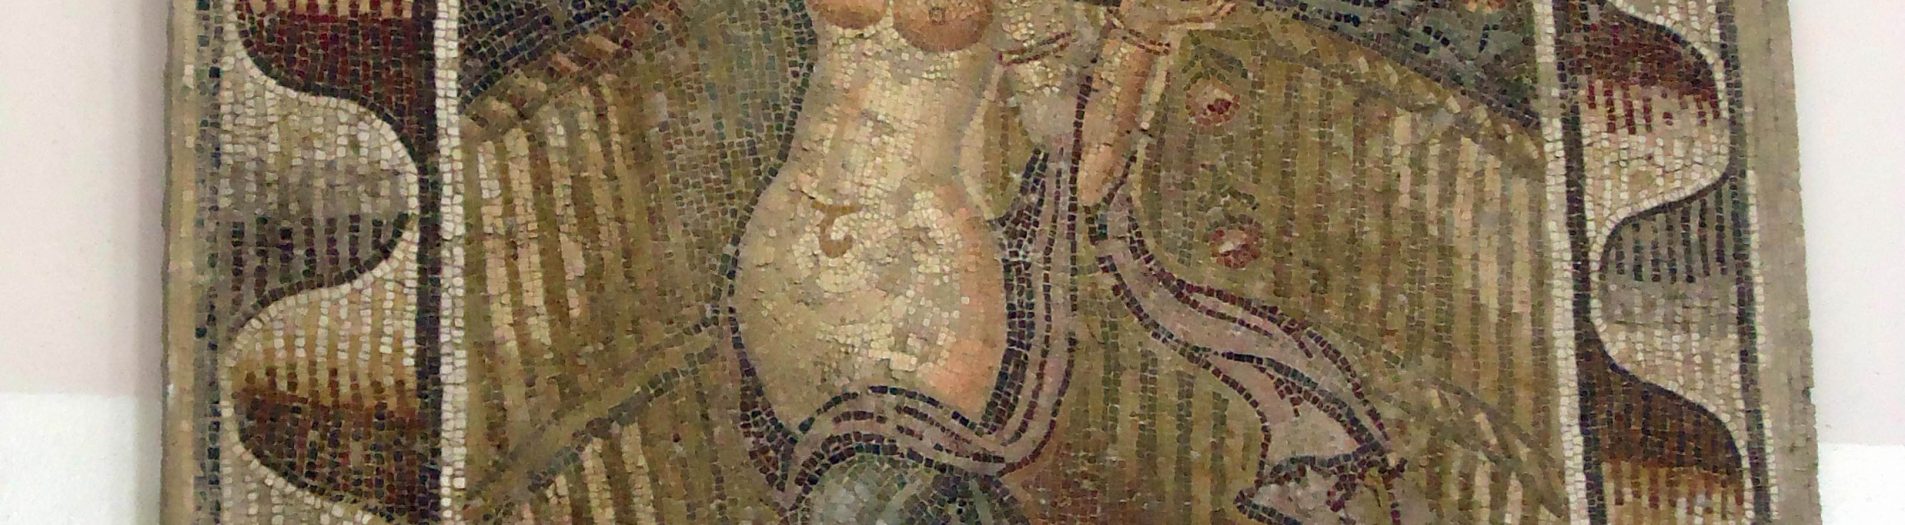 La mosaïque des figures féminines de Sidi Ghrib